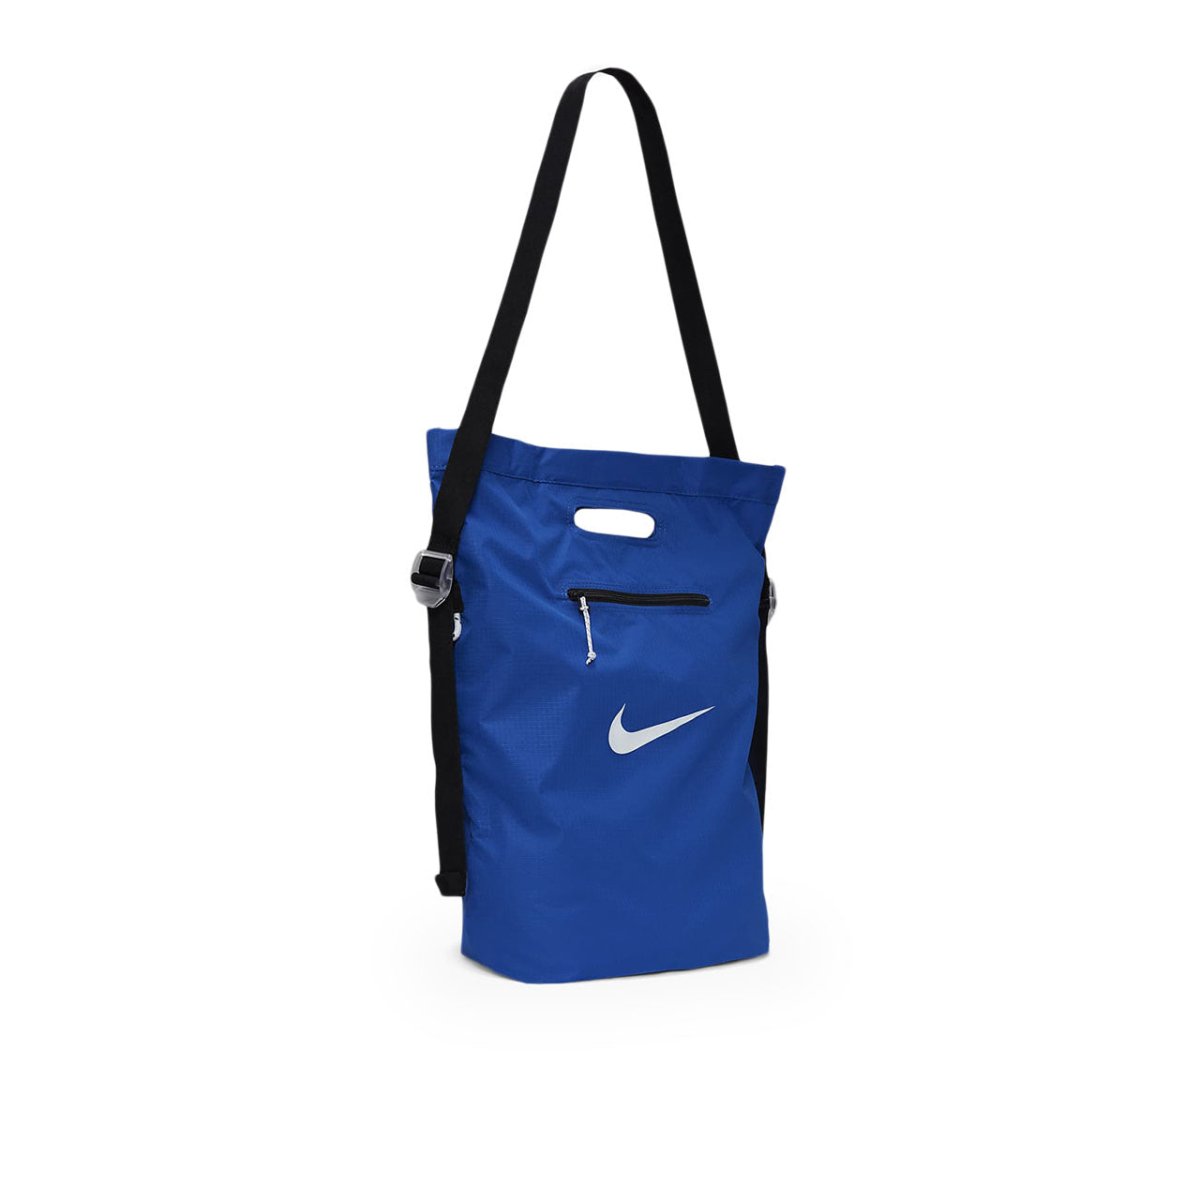 Nike Stash Tote Bag (Blau)  - Allike Store